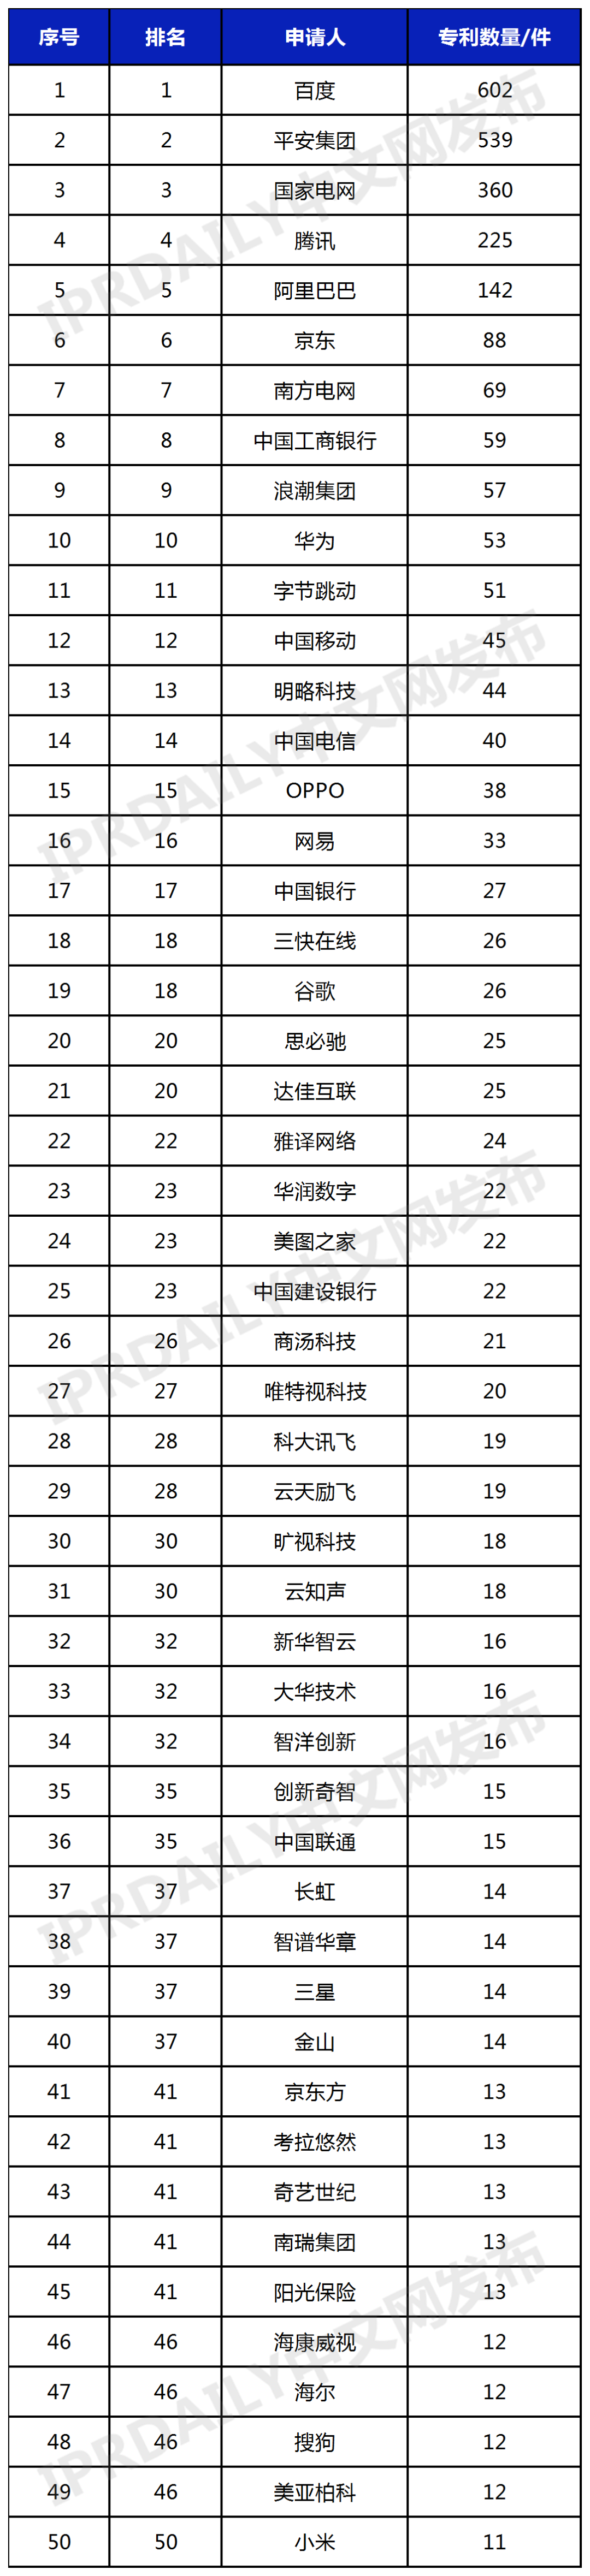 中国人工智能大模型企业发明专利排行榜（TOP 50）